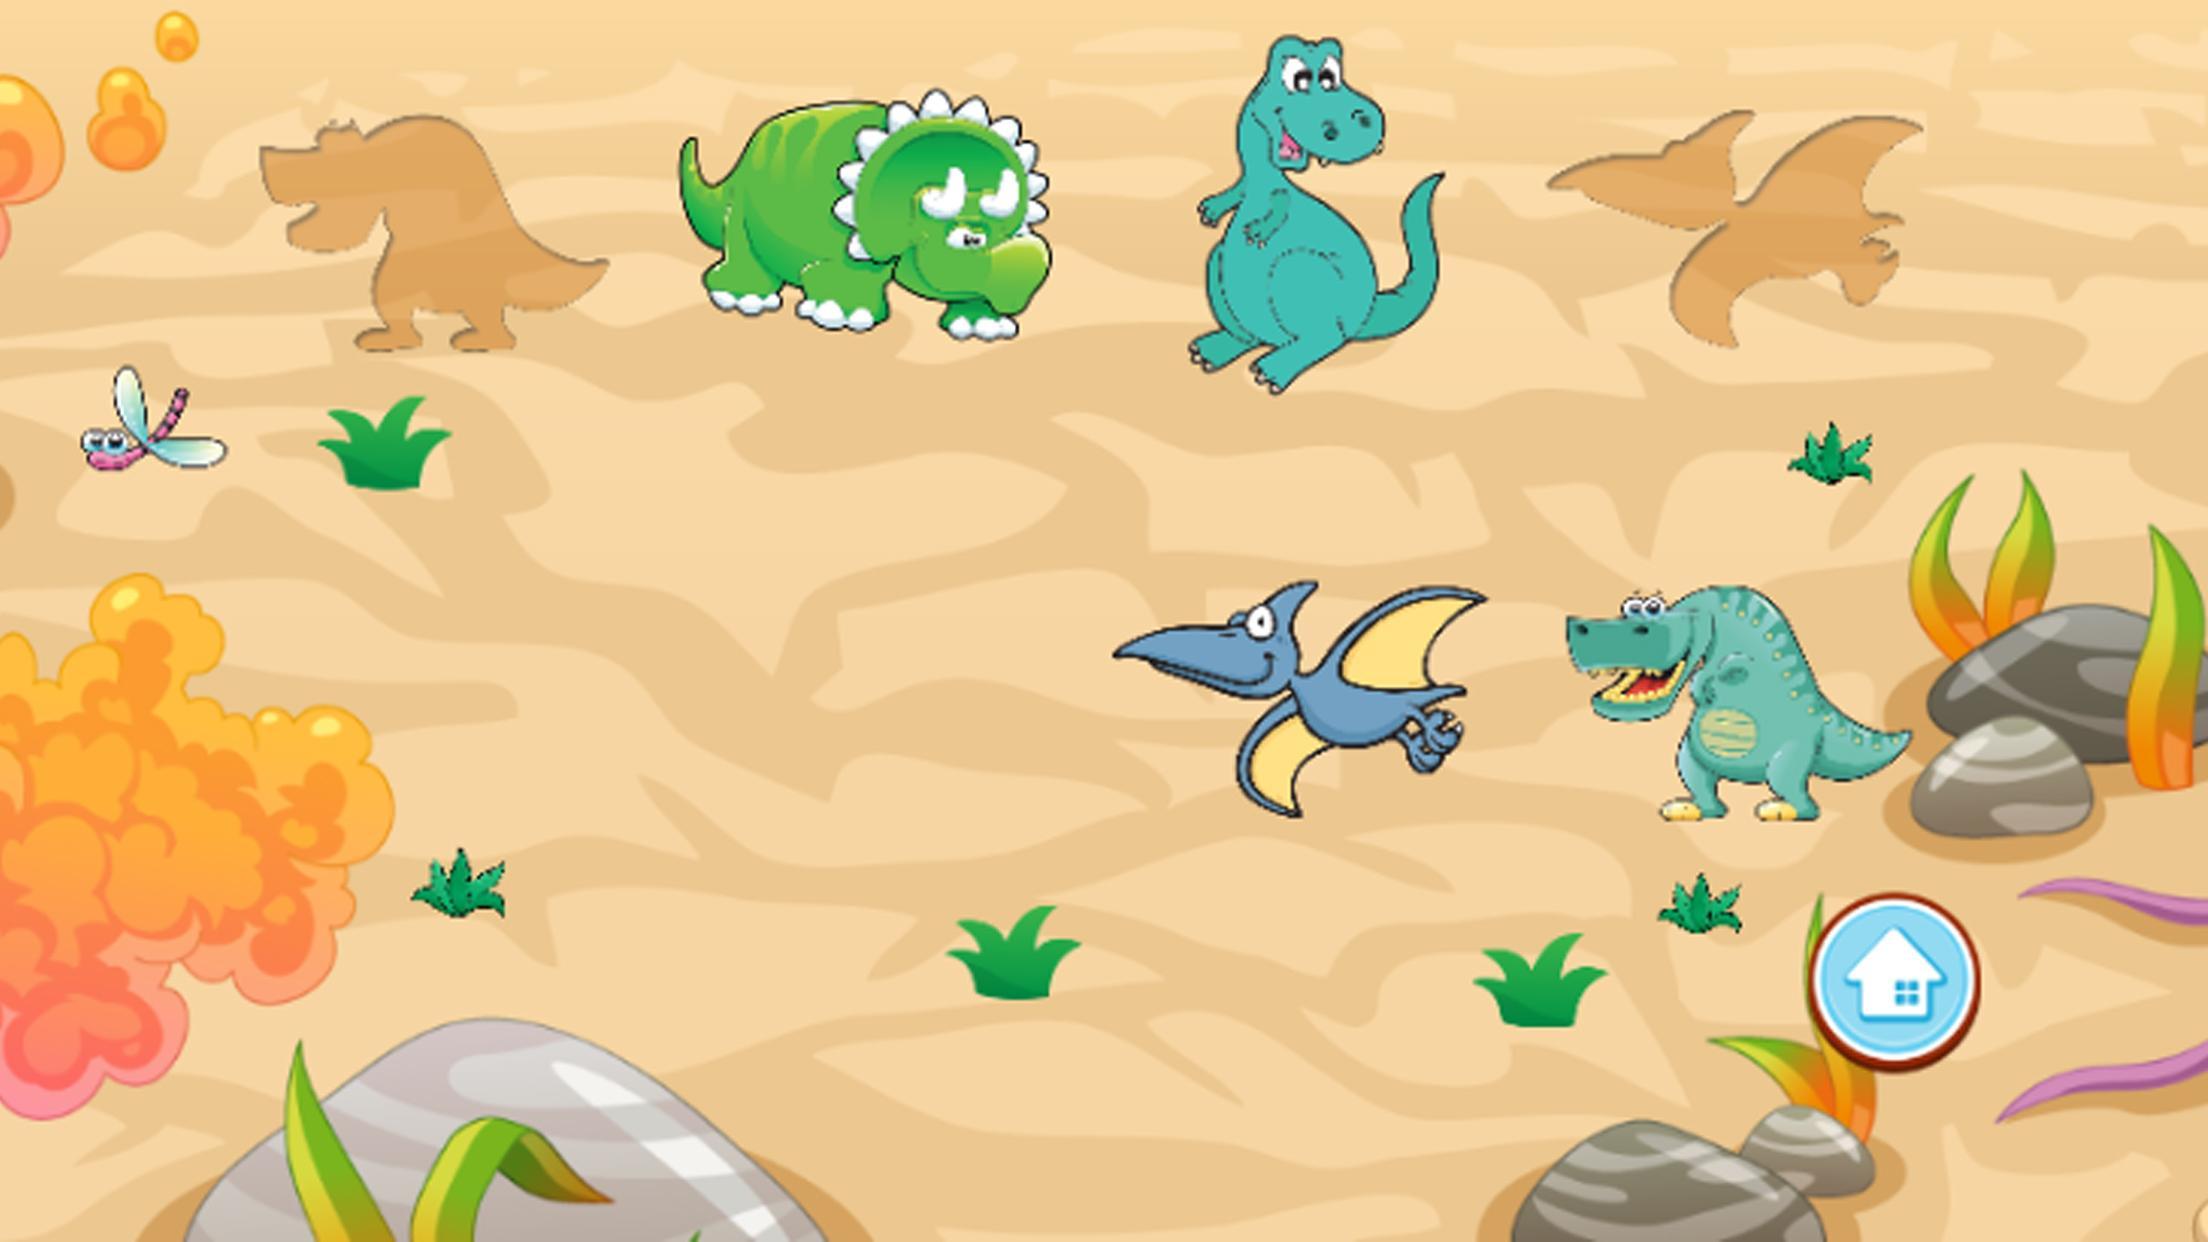 Про динозавров детям 3 года. Игра Динозаврики игра Динозаврики игра Динозаврики игра Динозаврики. Развивающие игры динозавры. Головоломки с динозаврами. Игры с динозавриками для малышей.